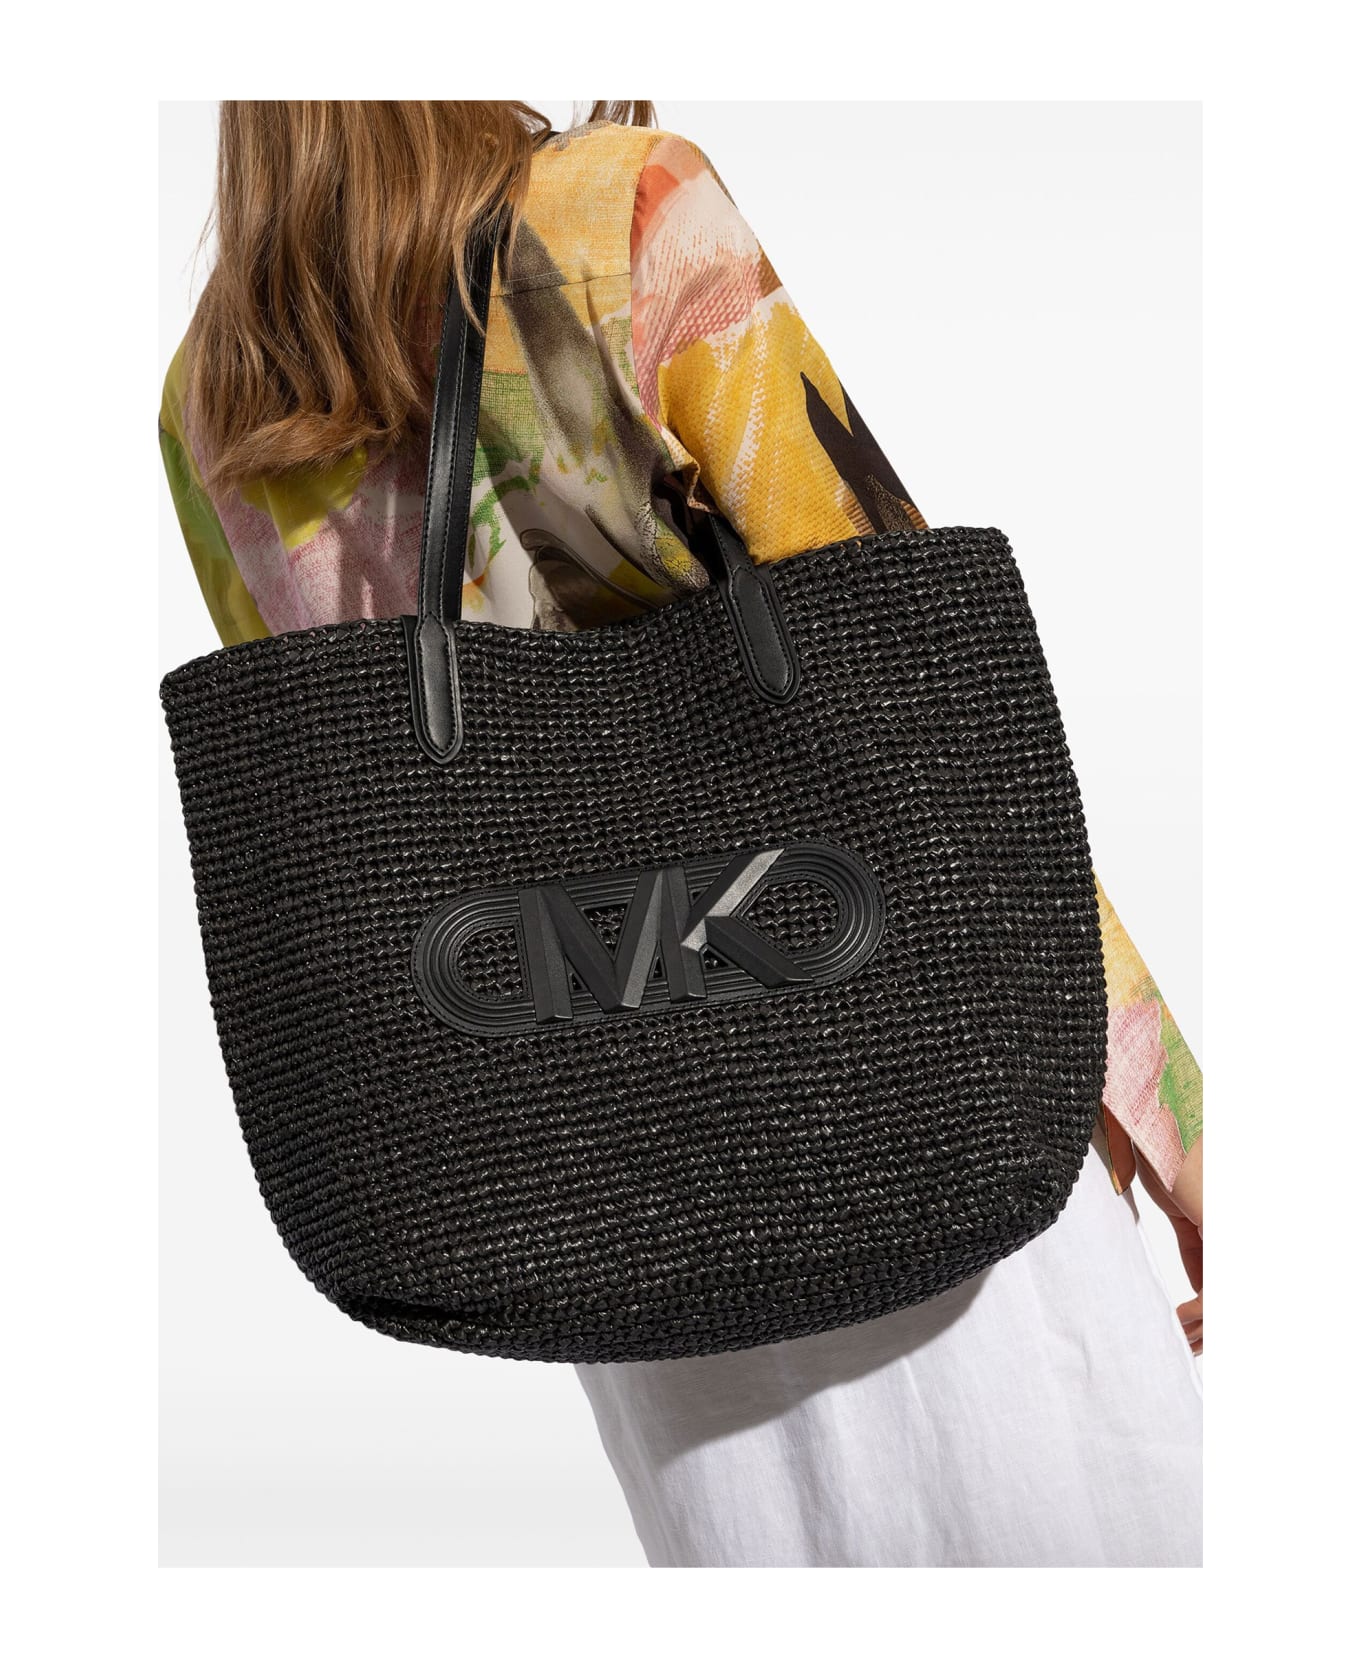 Michael Kors Eliza Tote Bag In Black Straw With Logo - BLACK BLACK